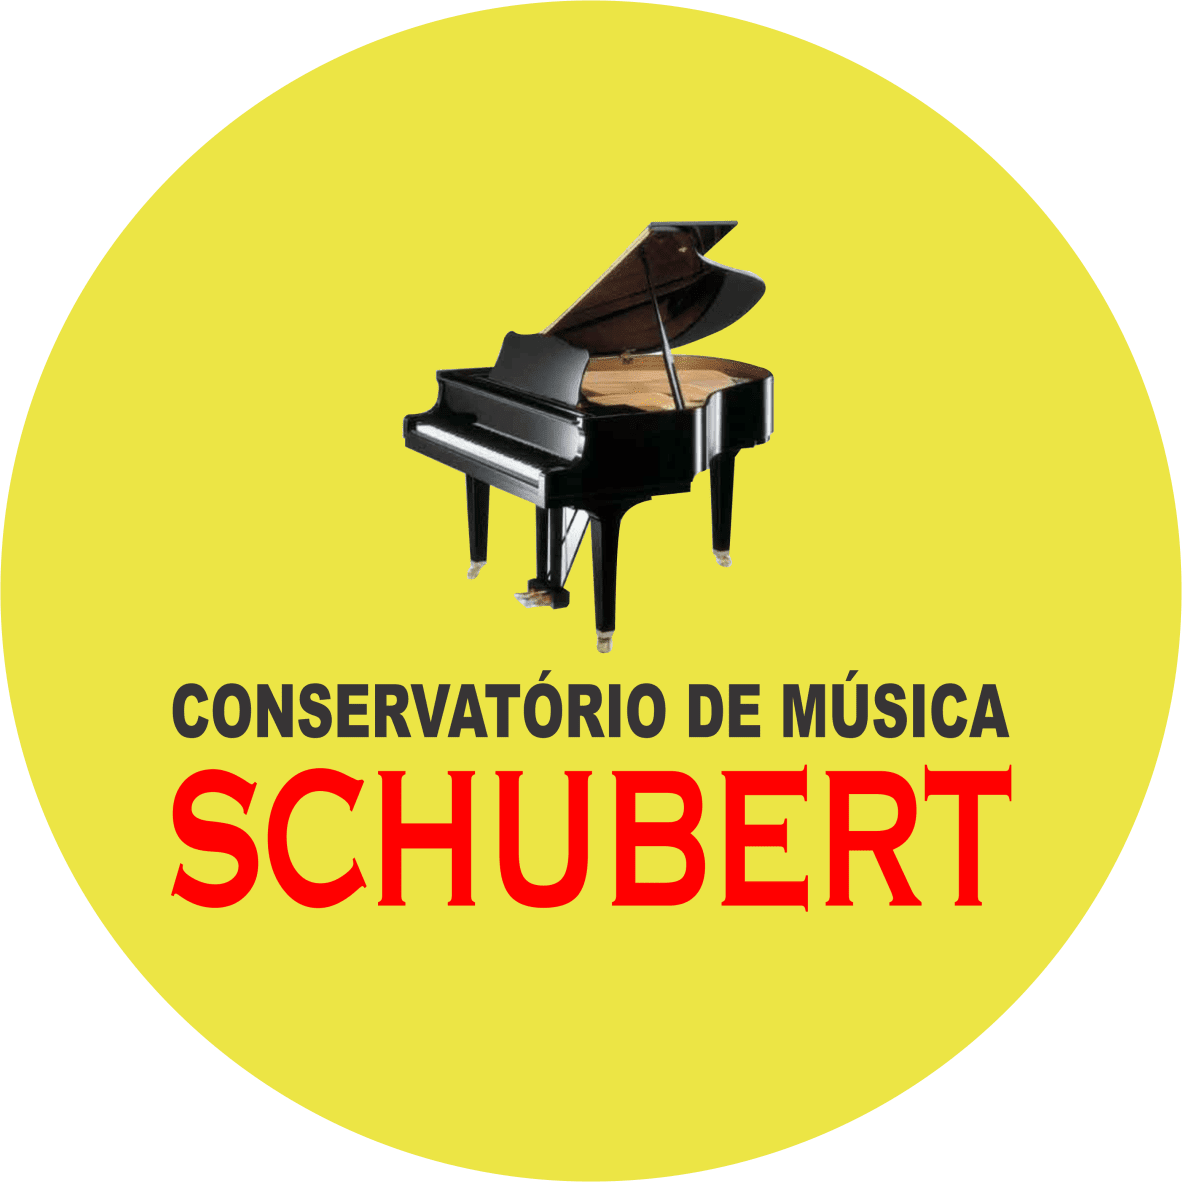 Conservatório de Música Schubert